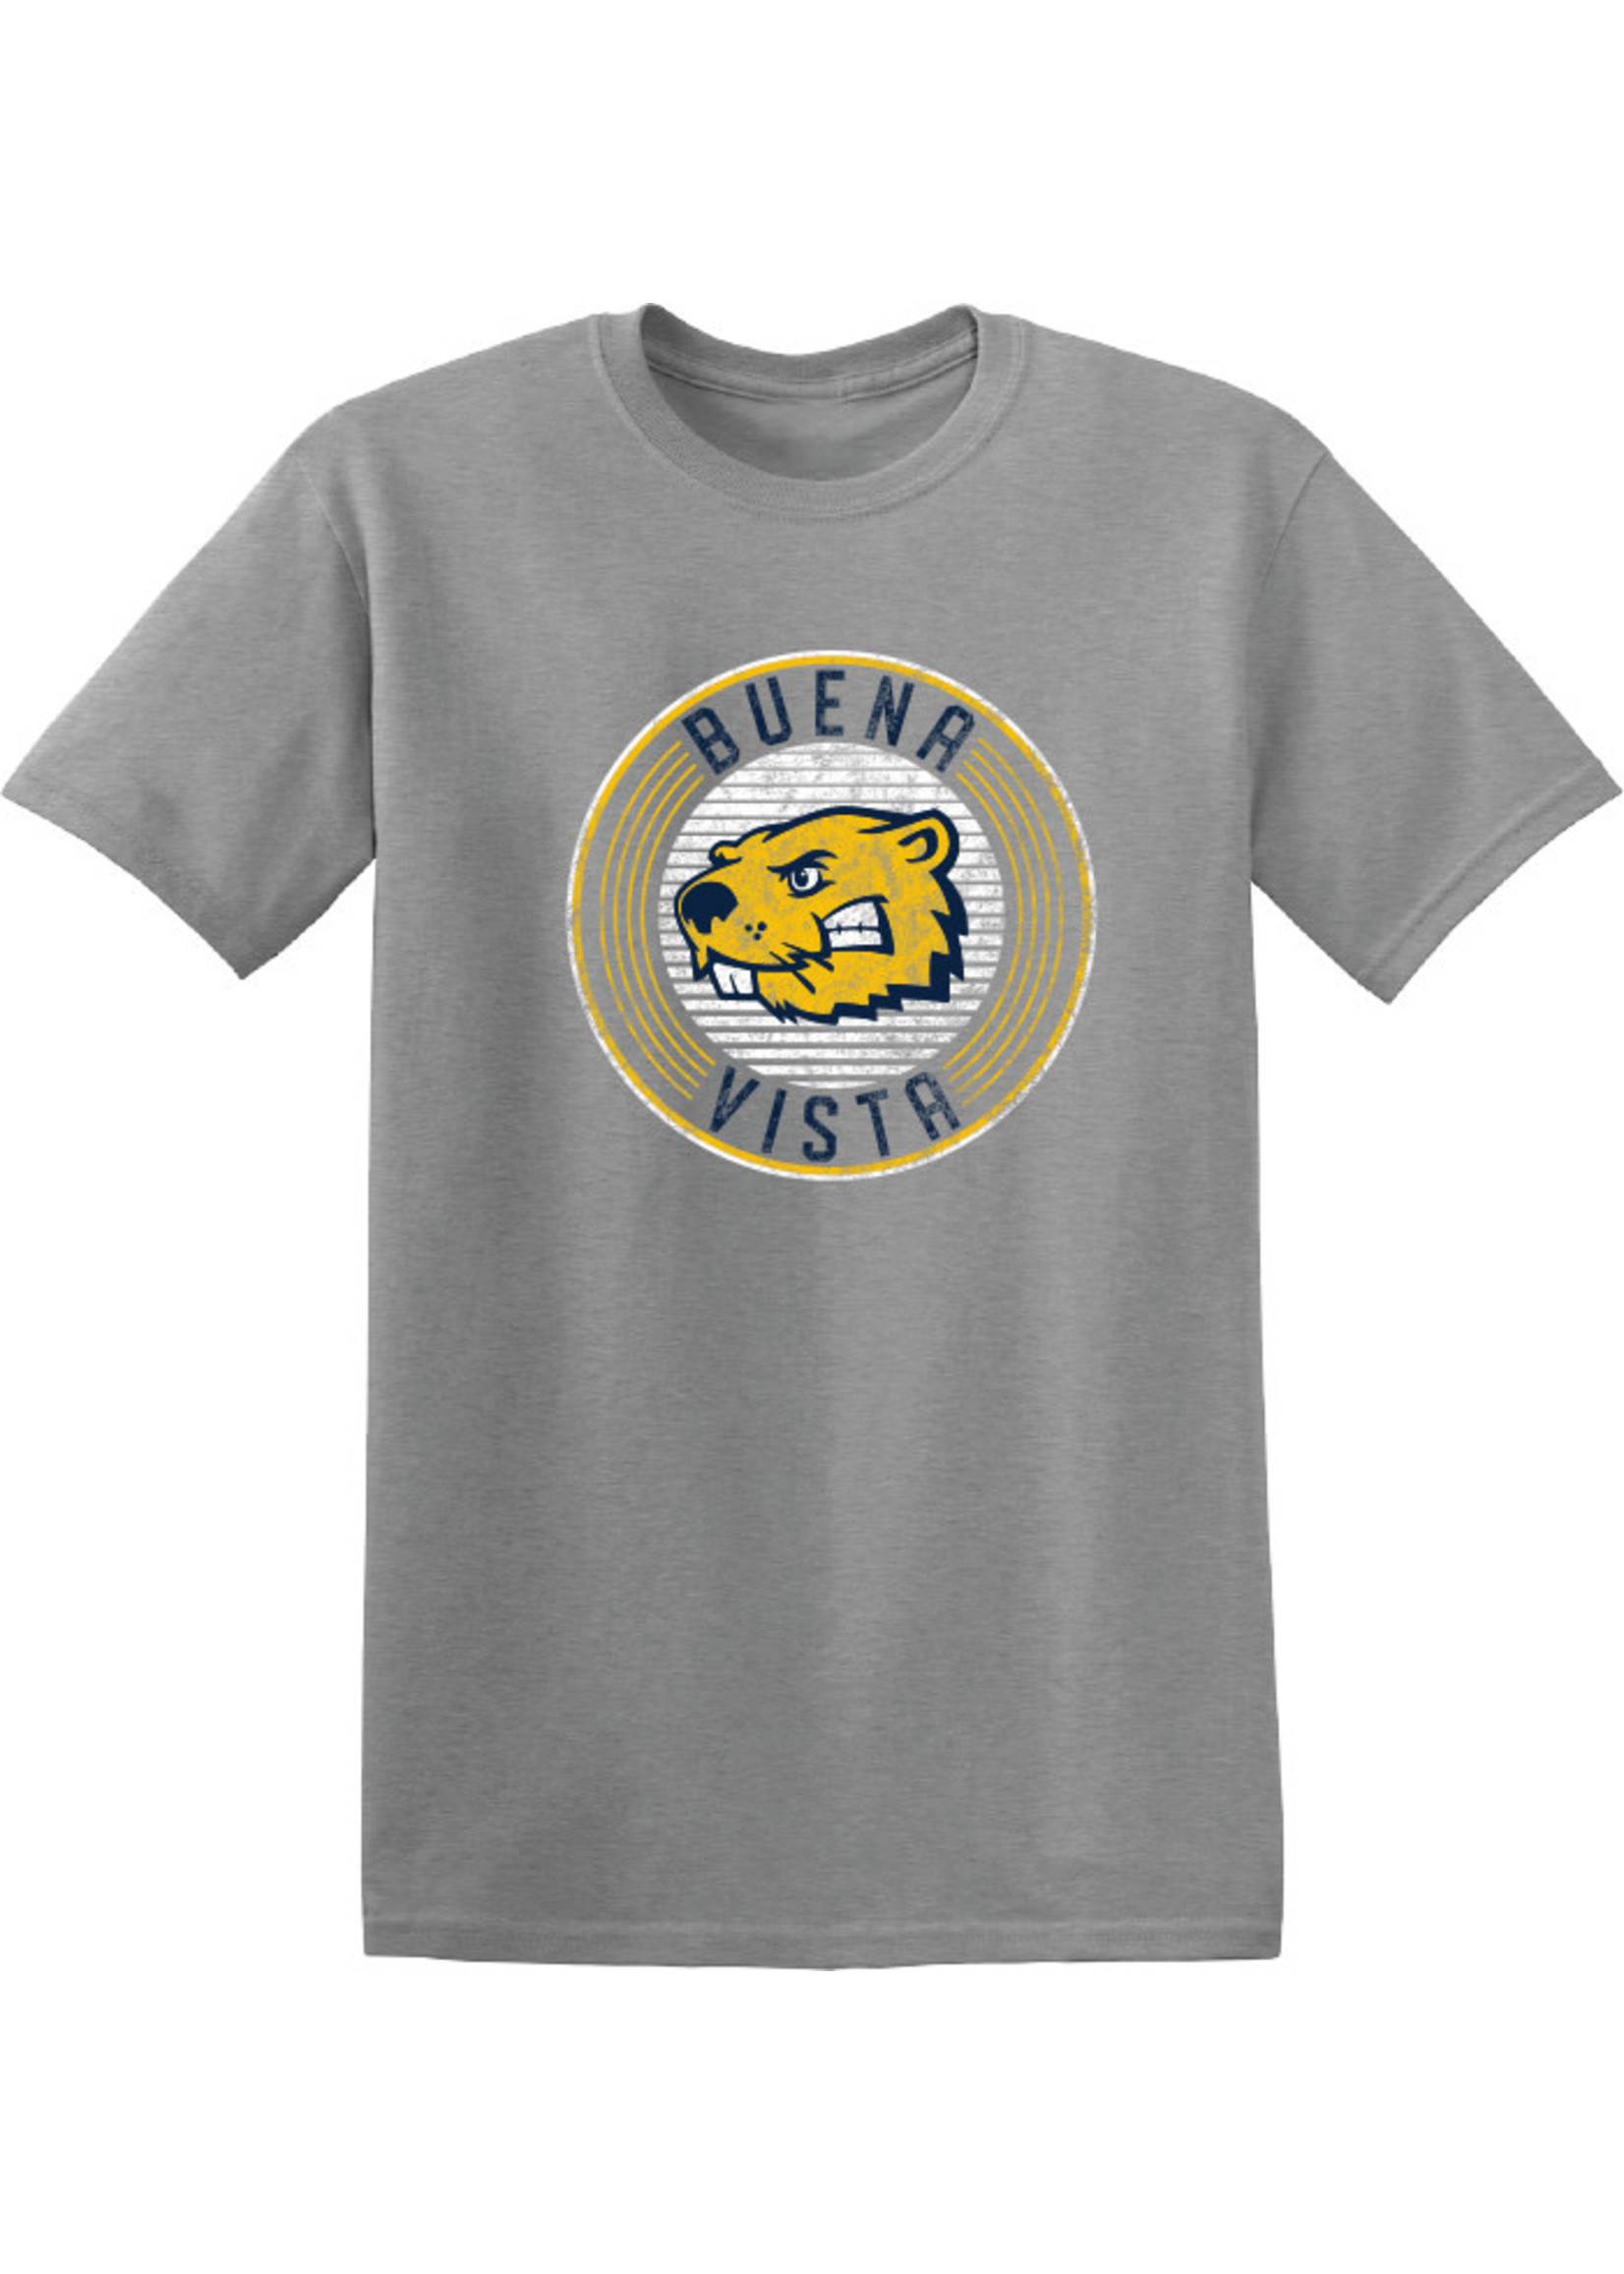 Gildan Distressed Buena Vista T- Shirt